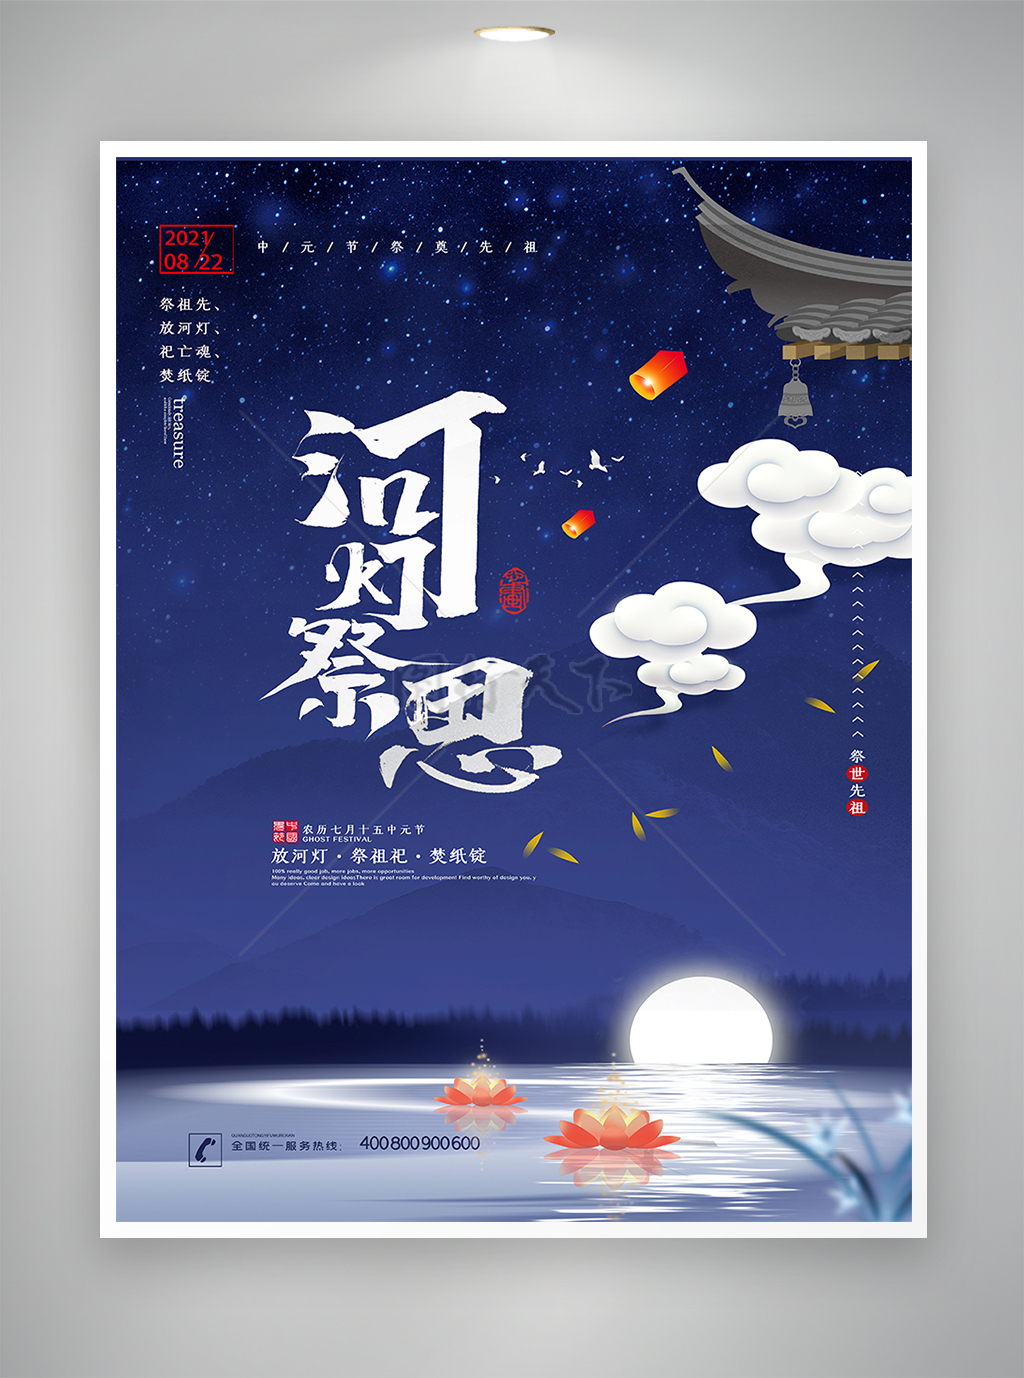 中国传统节日-中元节宣传海报